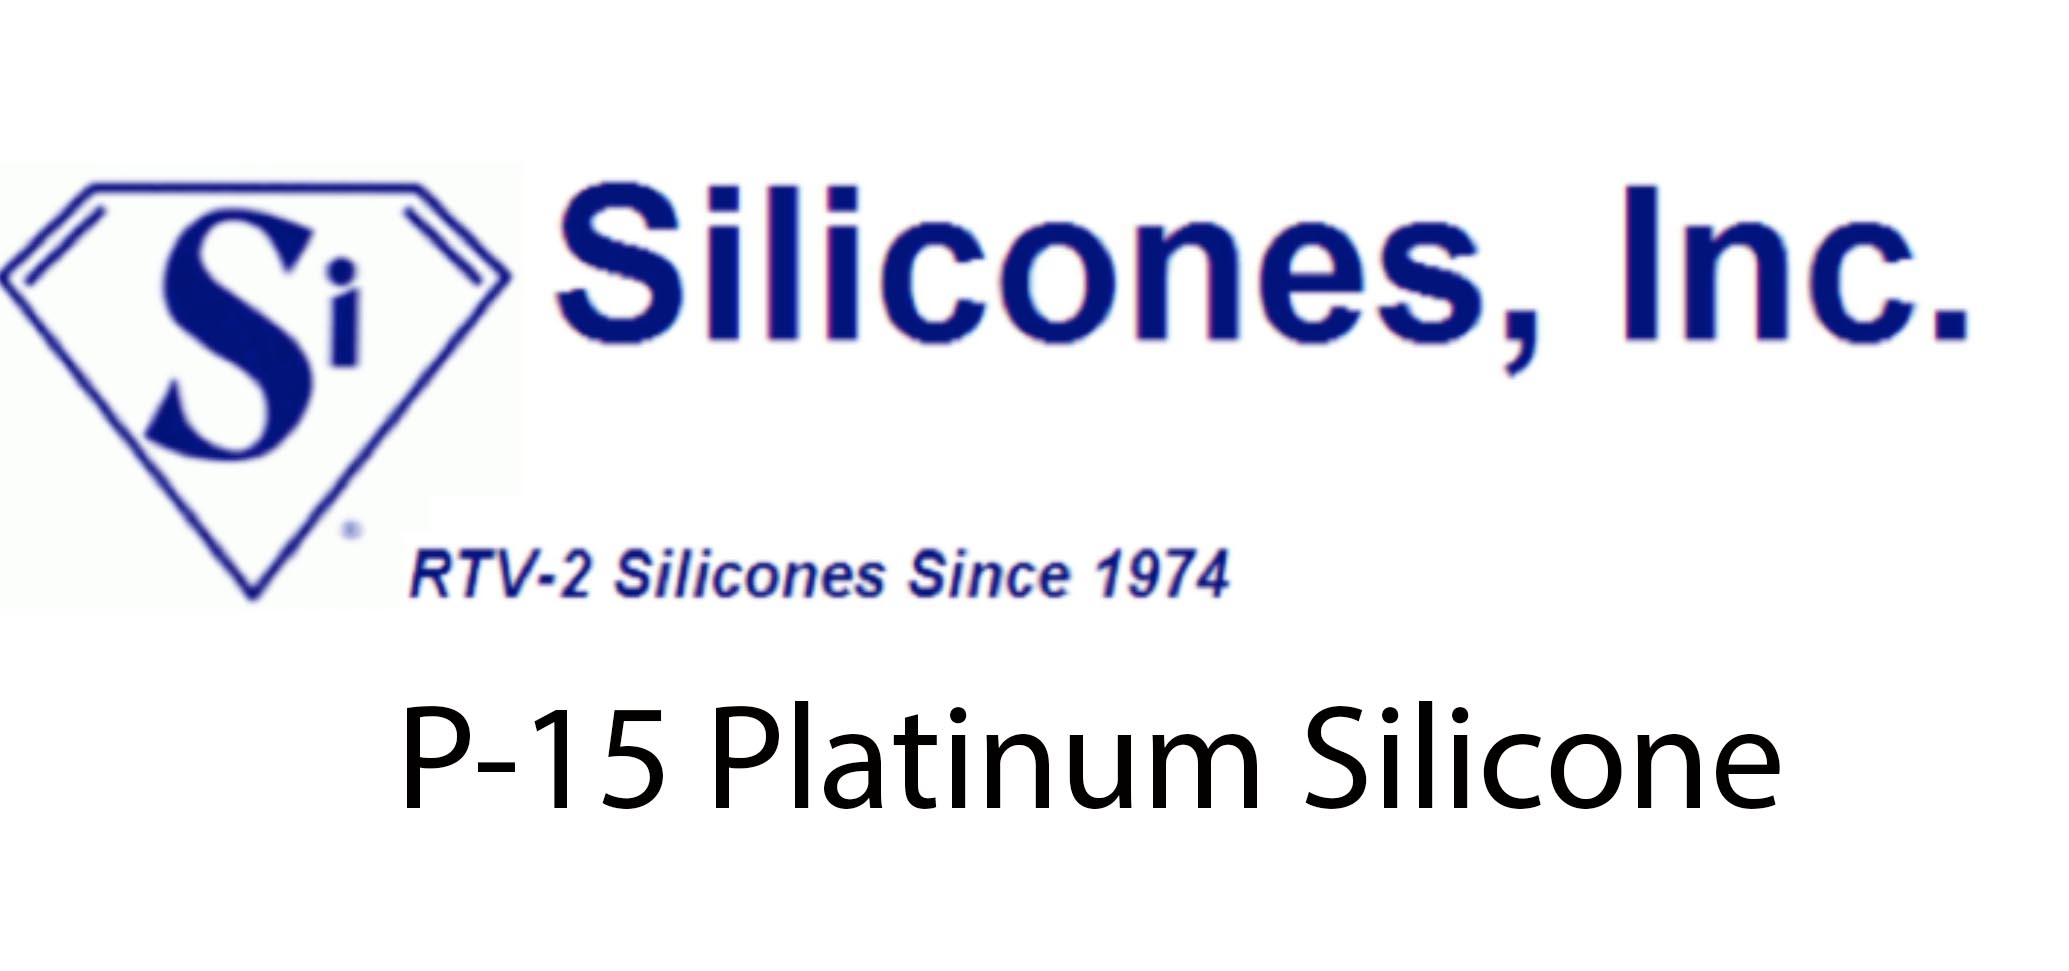 Silicone Inc. P-15 Platinum Silicone